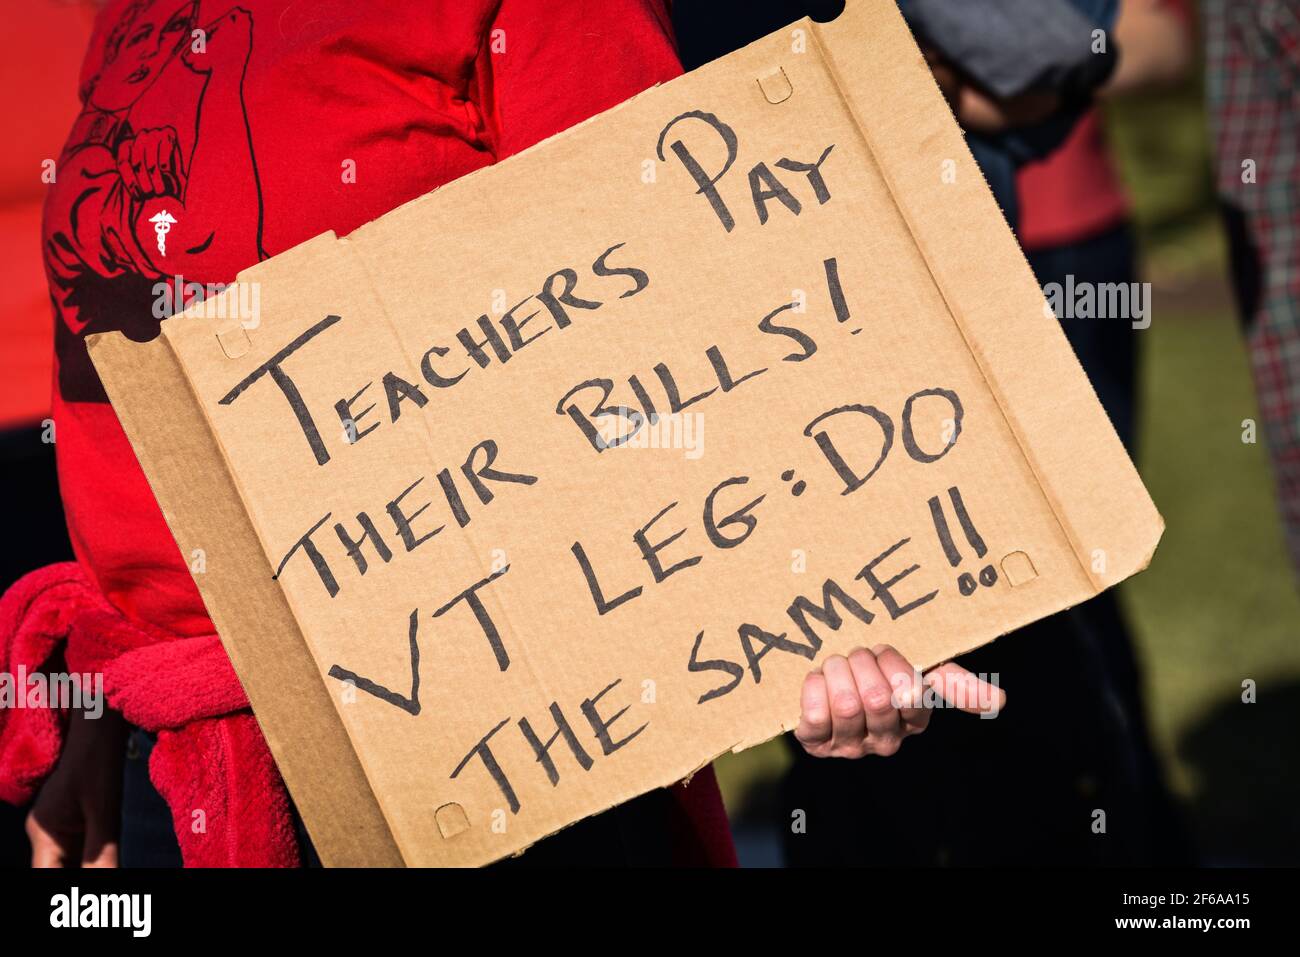 Dimostrazione da parte degli insegnanti del Vermont per protestare contro le modifiche proposte nei loro piani pensionistici finanziati con fondi pubblici, Vermont state House, Montpelier, VT, USA. Foto Stock